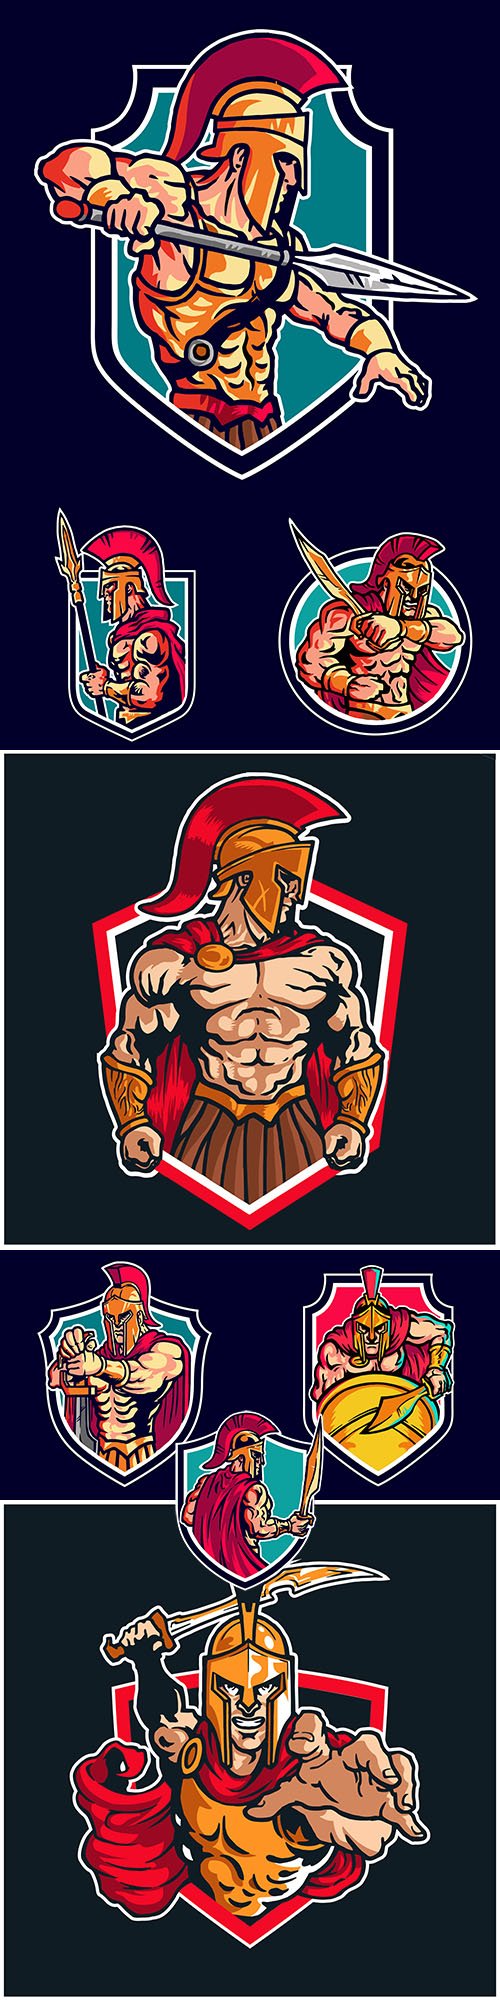 Spartan warrior vector logo mascot design